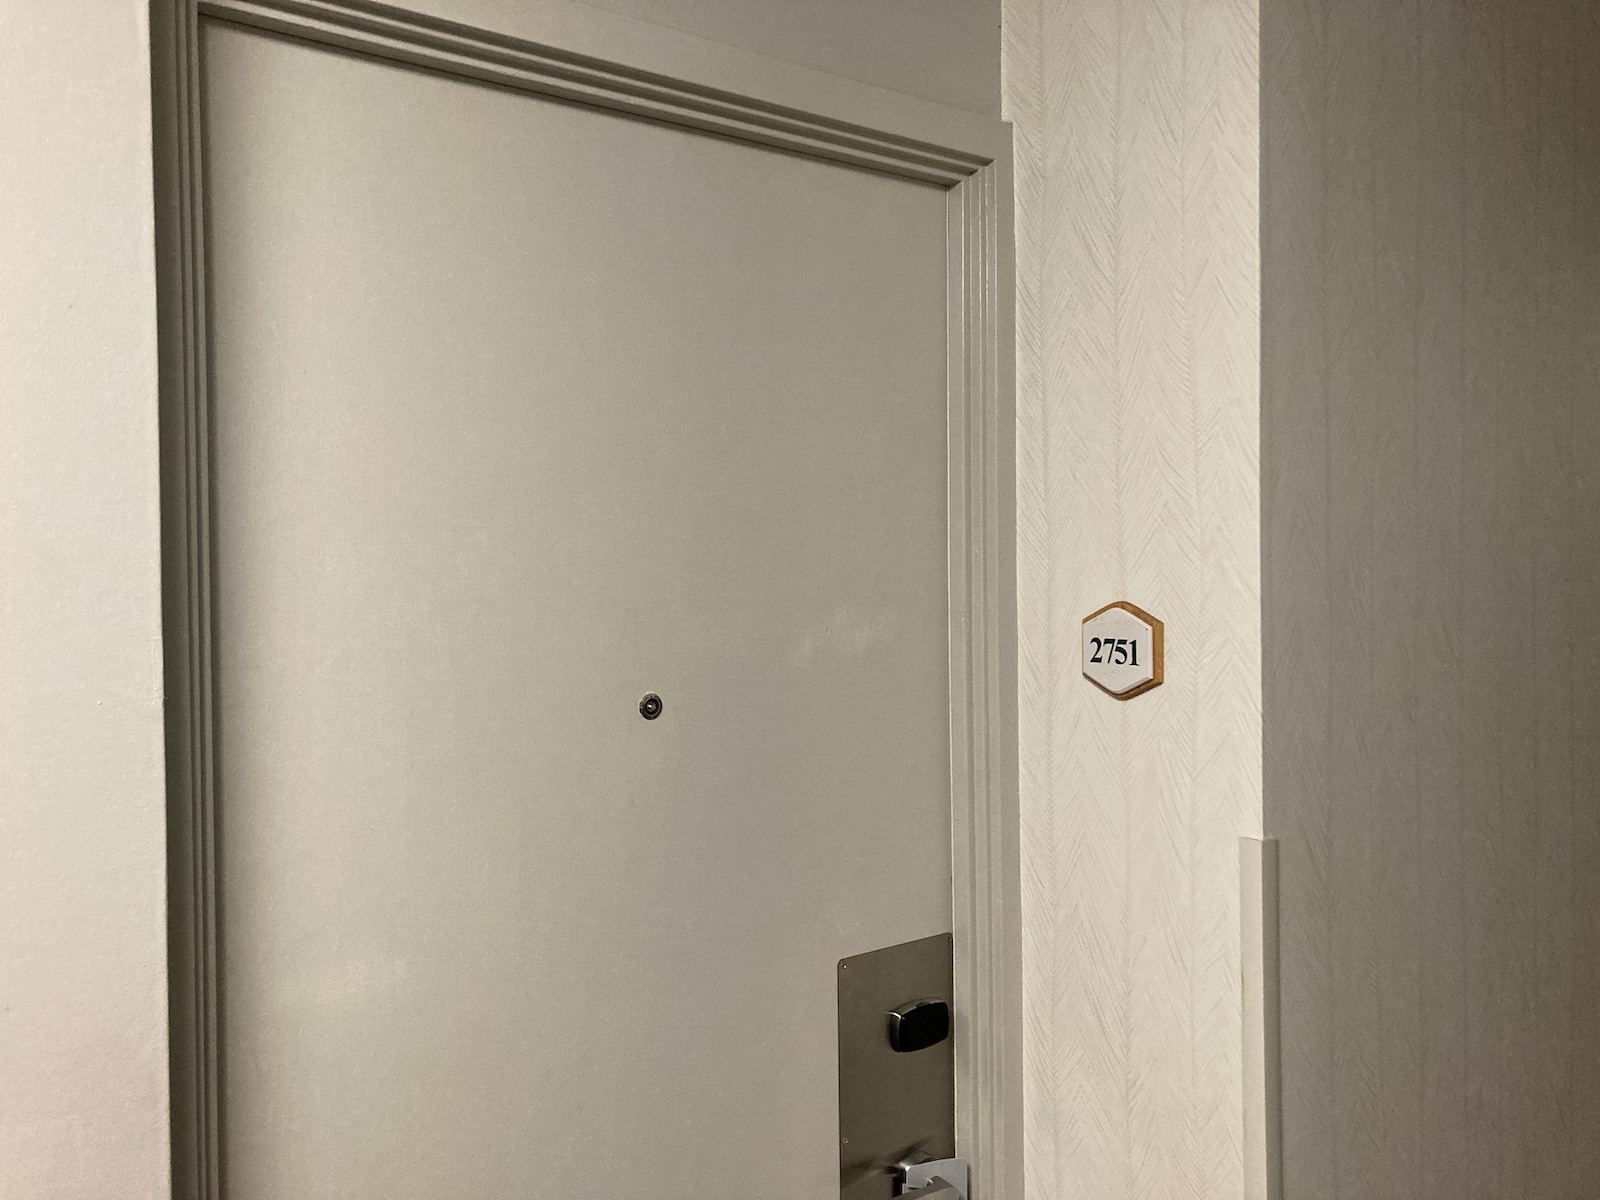 Door to guest room 2751